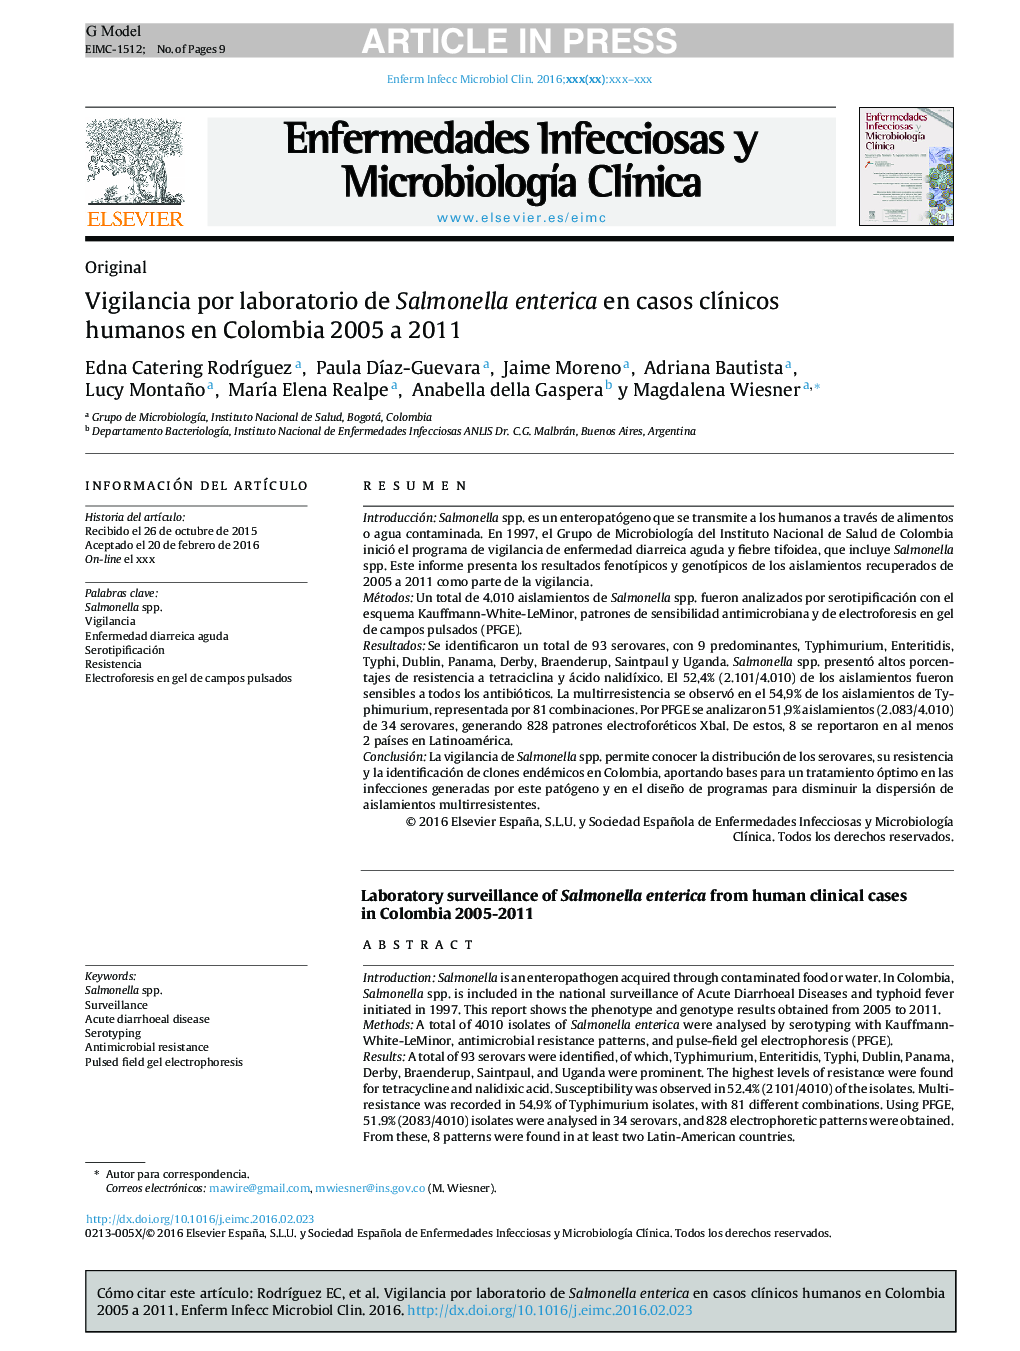 Vigilancia por laboratorio de Salmonella enterica en casos clÃ­nicos humanos en Colombia 2005 a 2011